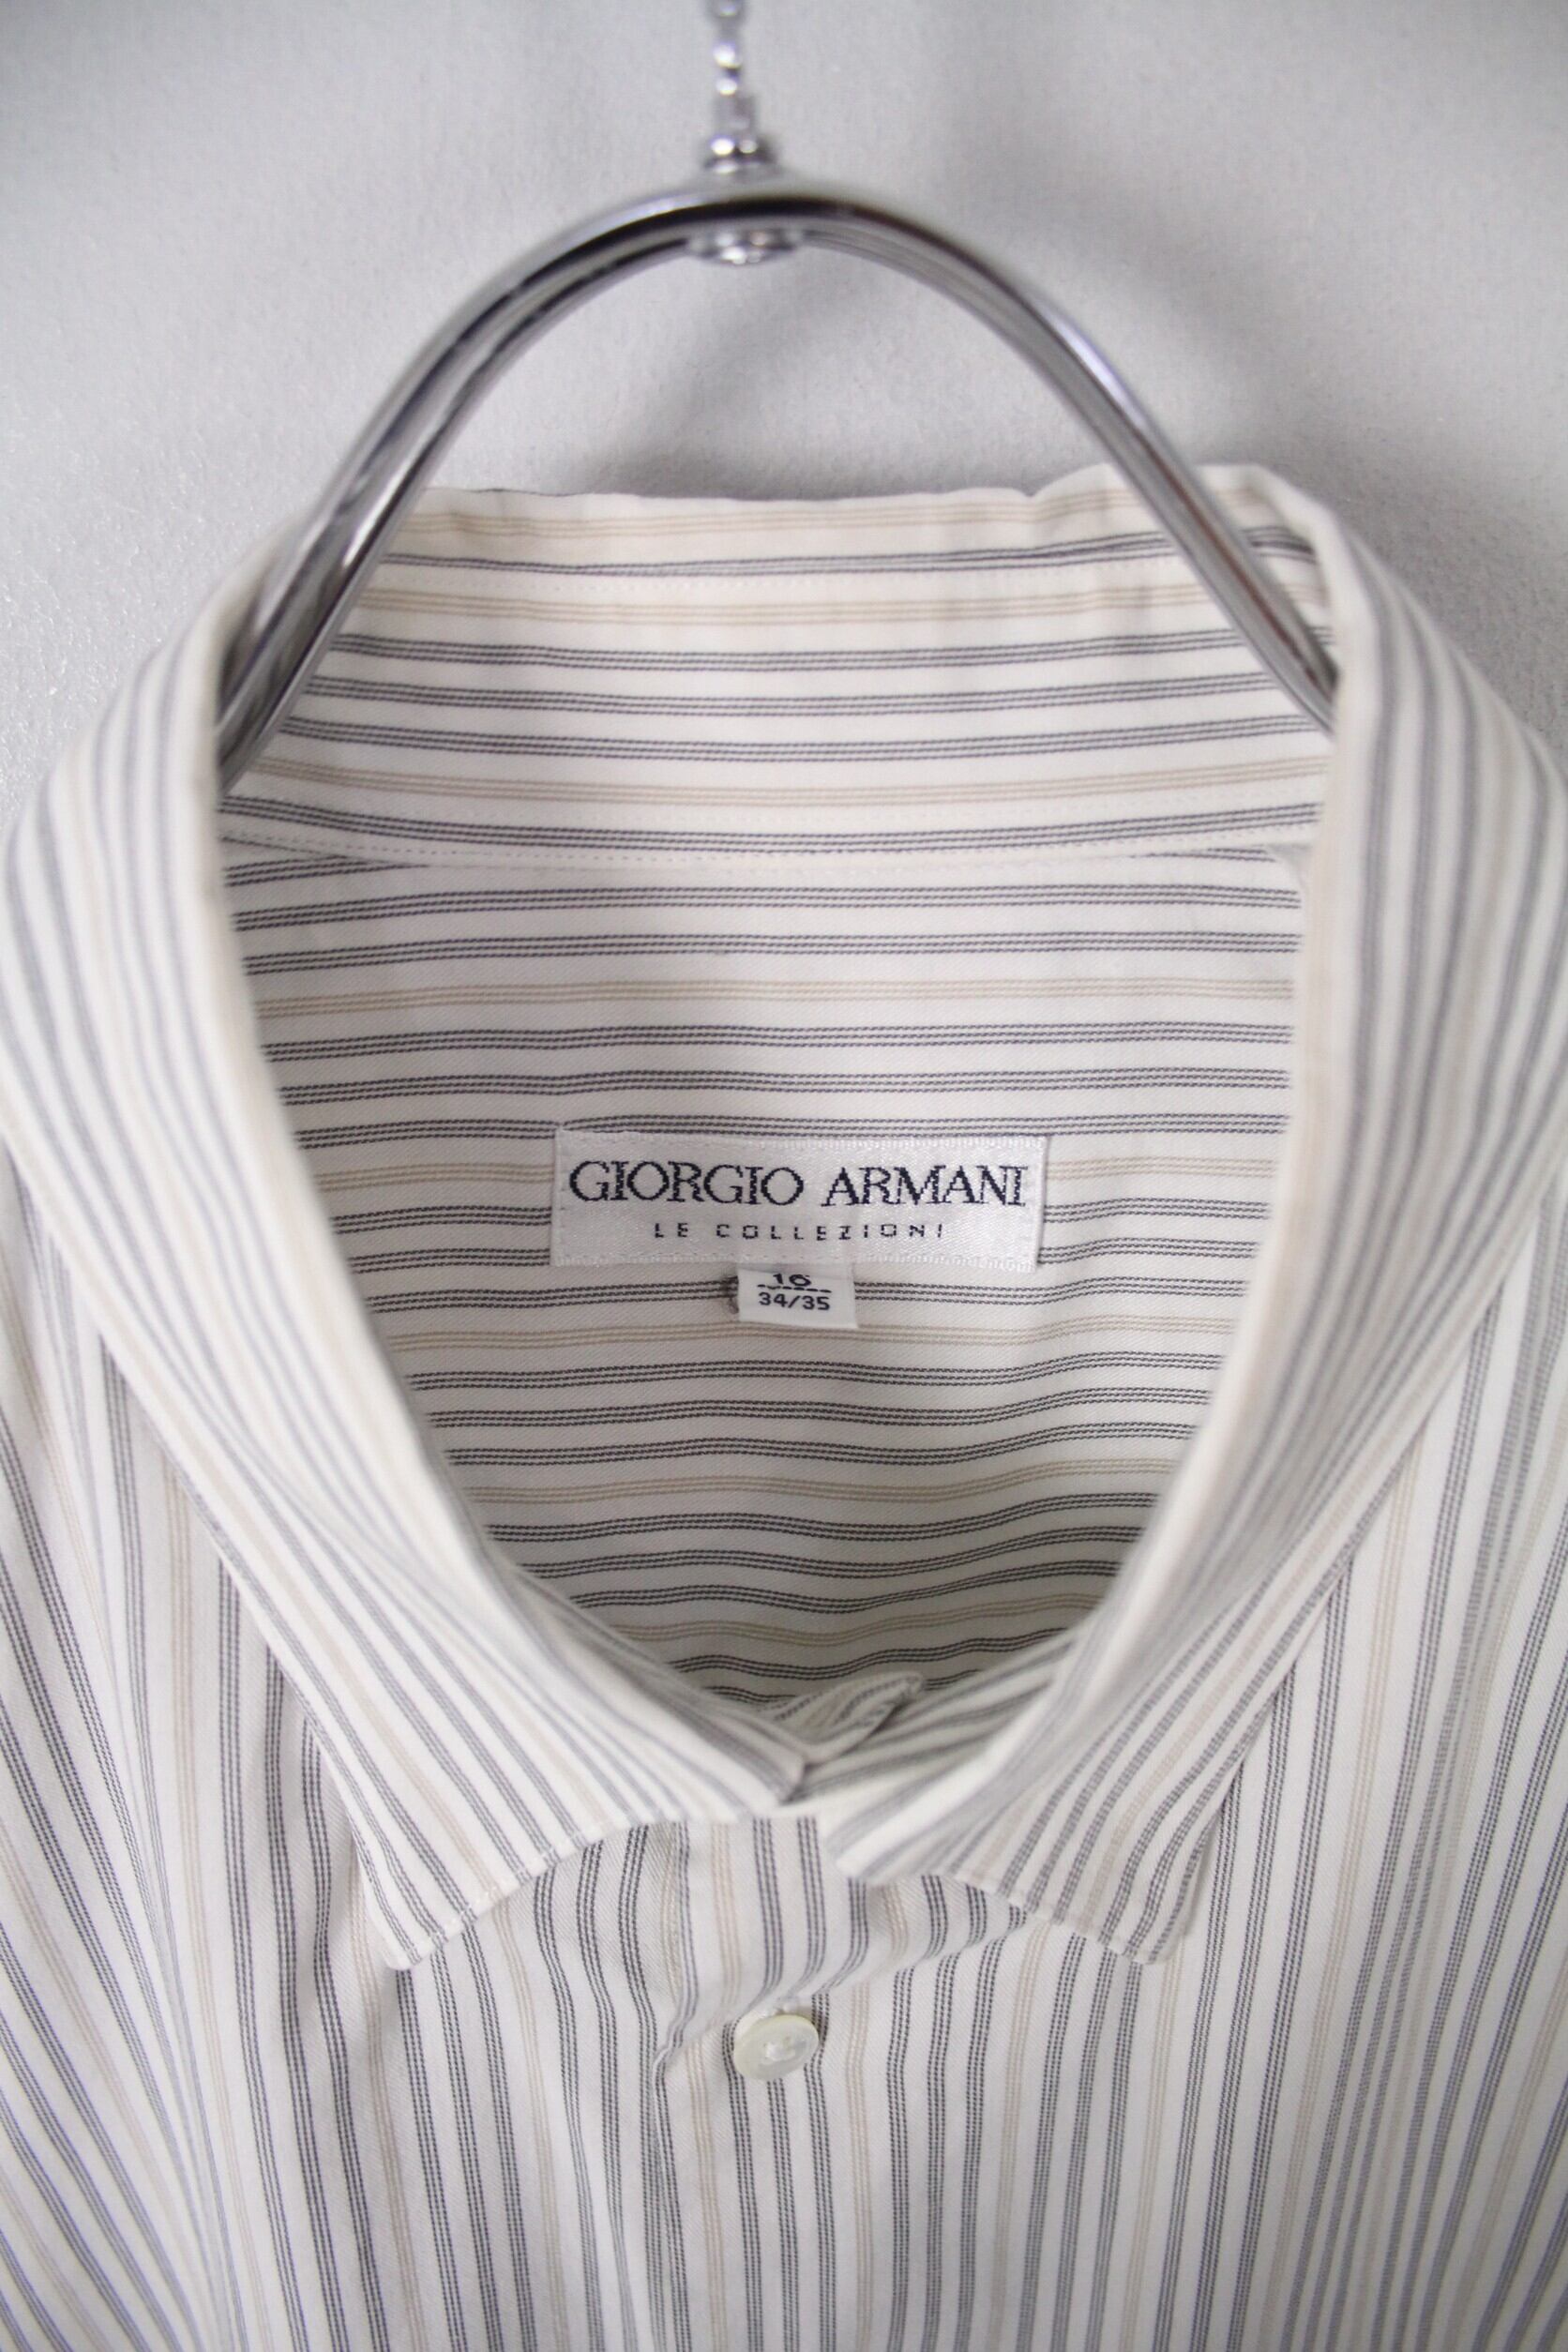 Giorgio Armani le collezioni 短丈ストライプシャツ